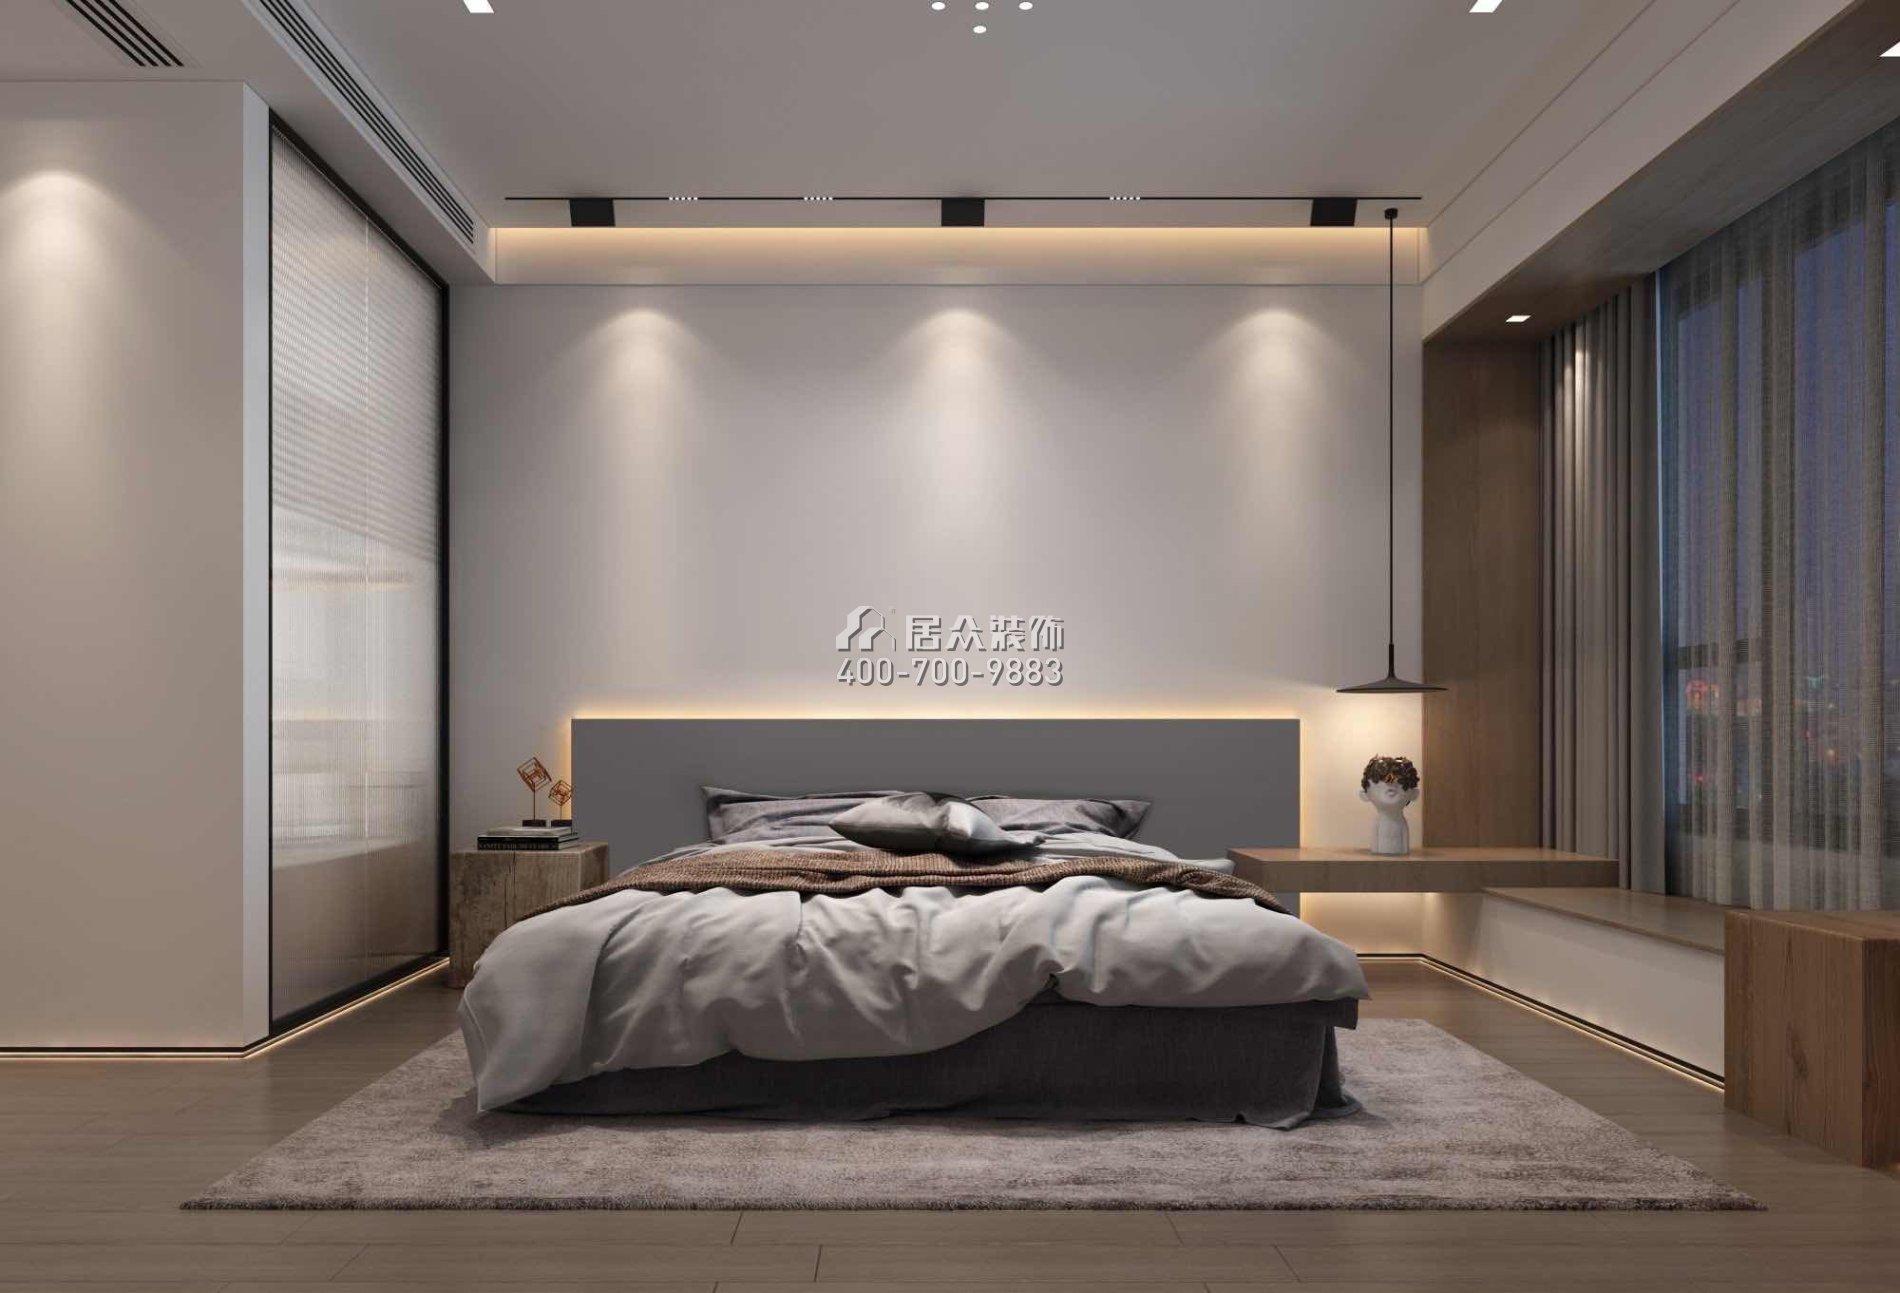 翠湖香山别苑280平方米现代简约风格复式户型卧室装修效果图